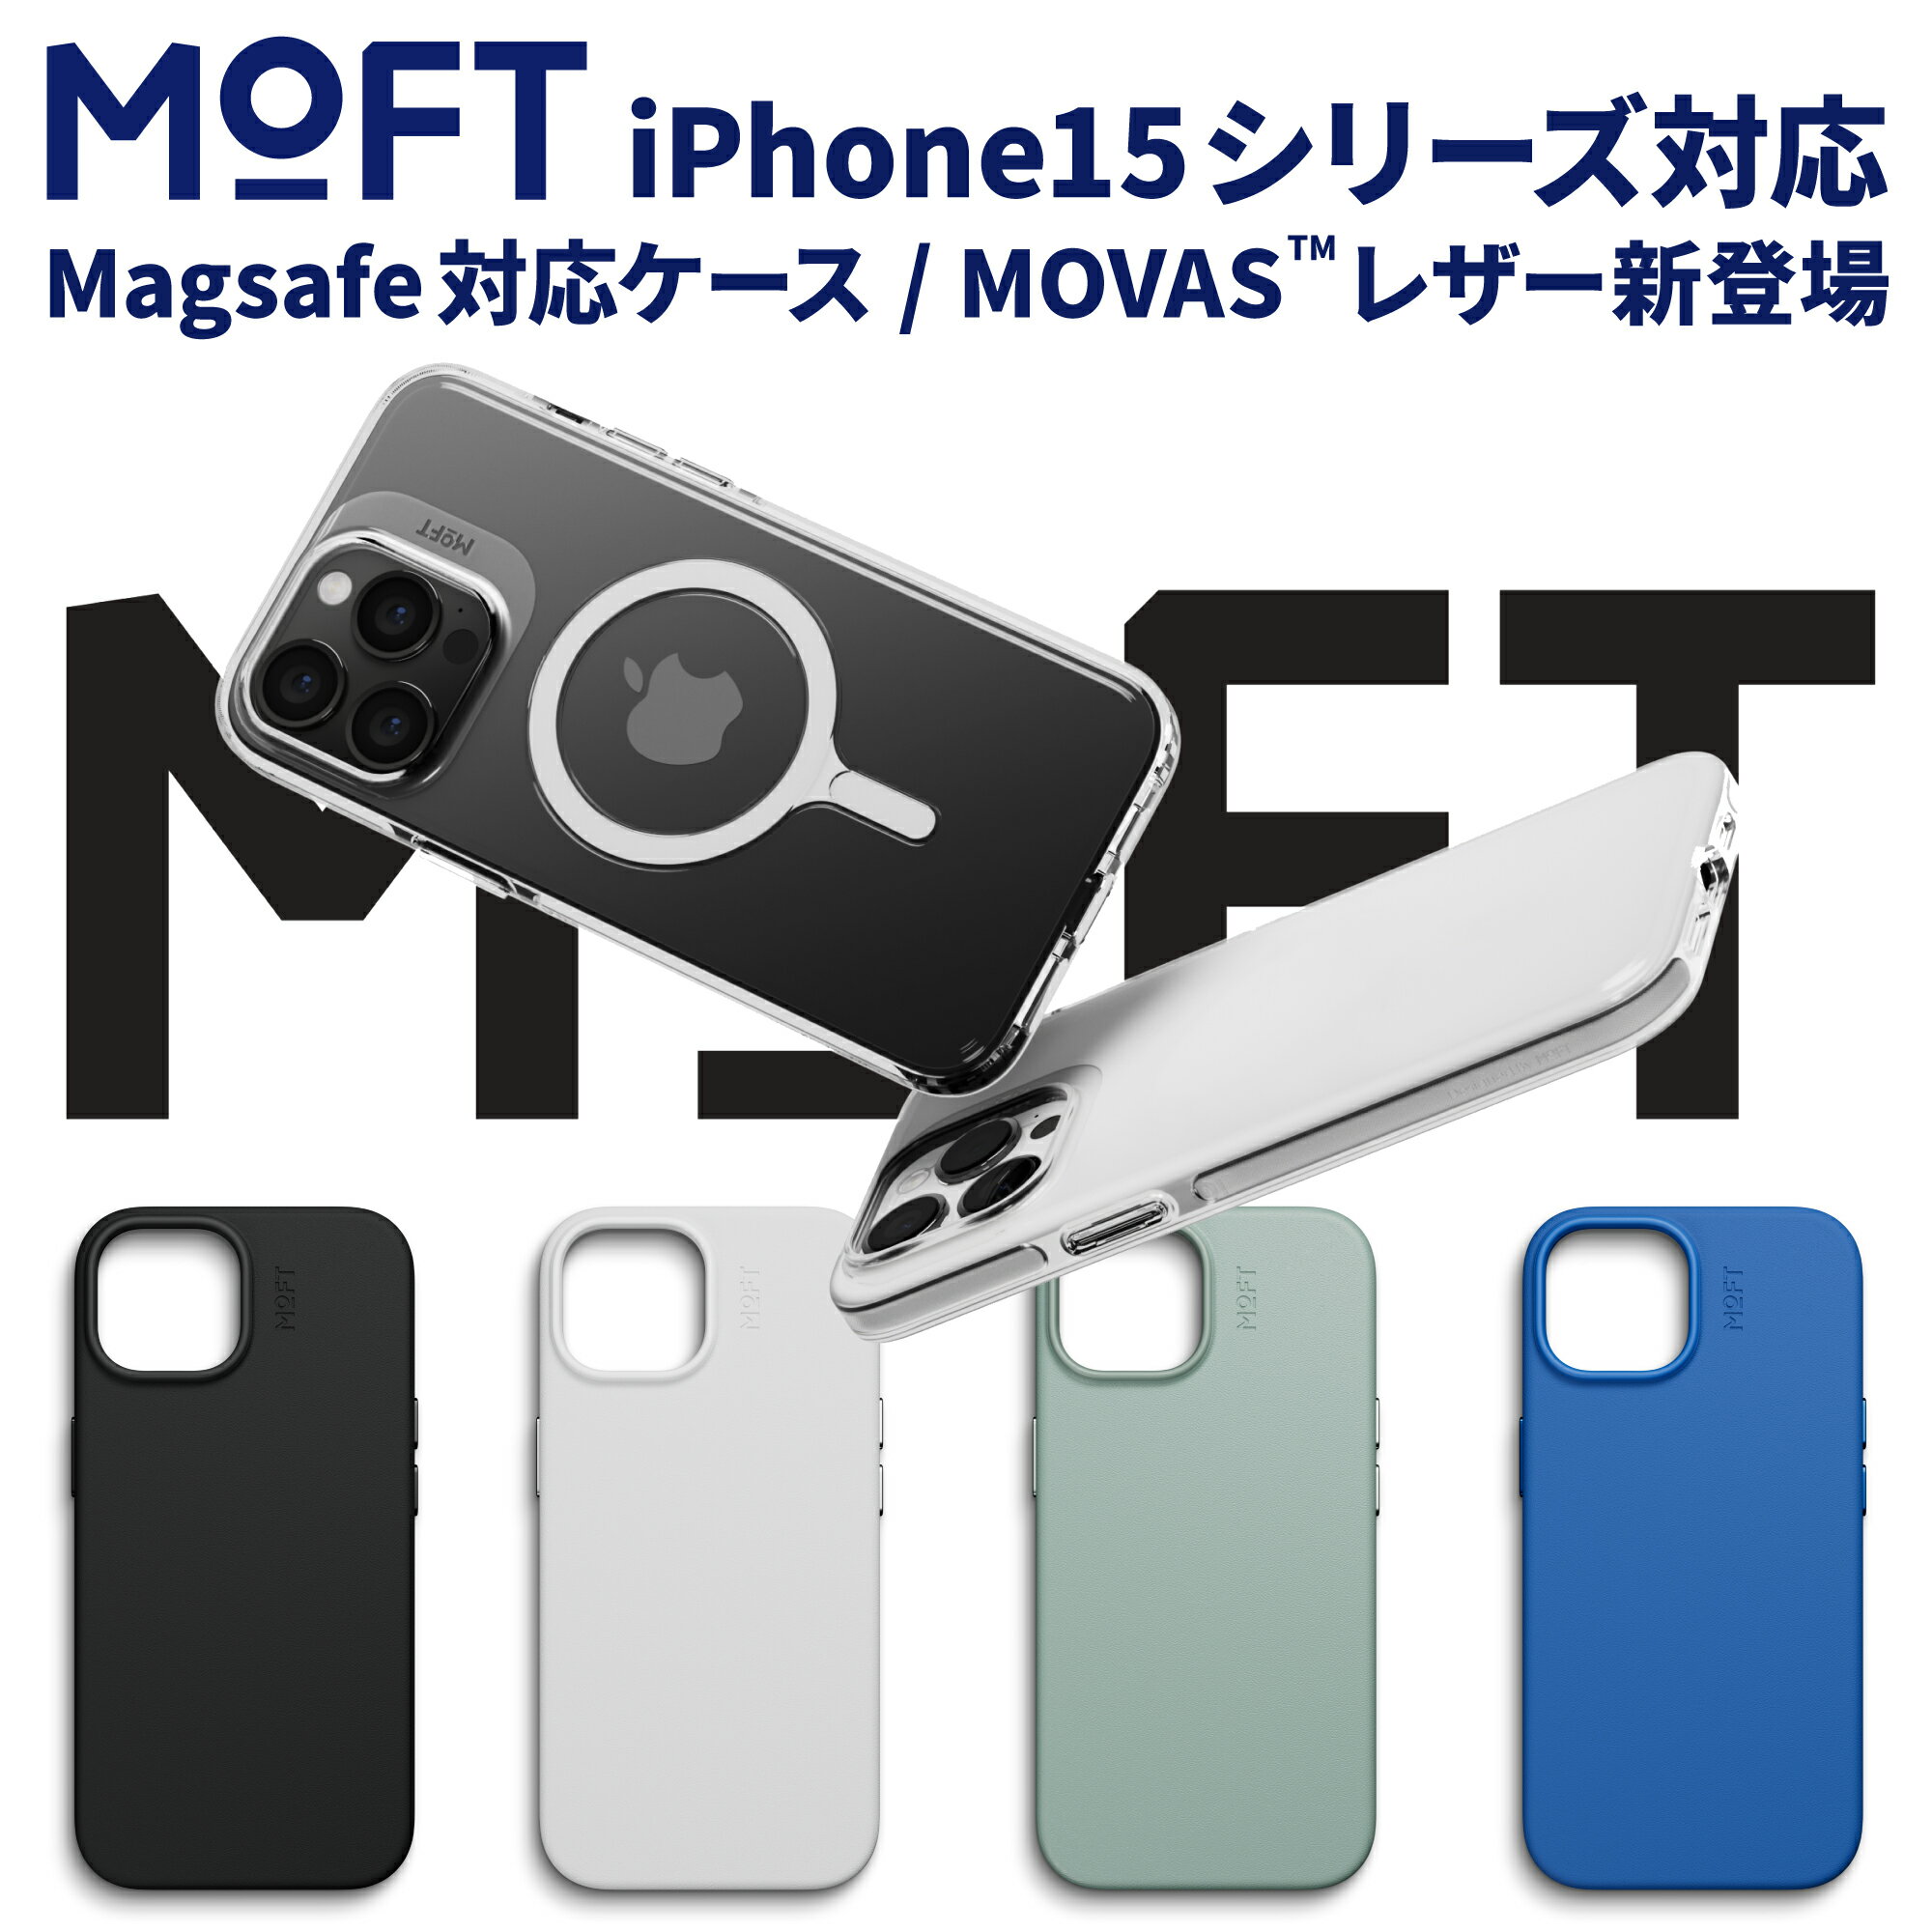 MOFT モフト MOVAS iPhone 15 pro promax plus スマホケース ケース レザーケース クリア クリアケース プラスチックケース ホワイト ジェットブラック ミスティグレー スモークターコイズ サファイアブルー MagSafe 高い耐久性 ストラップ ストラップホルダー 2個付属